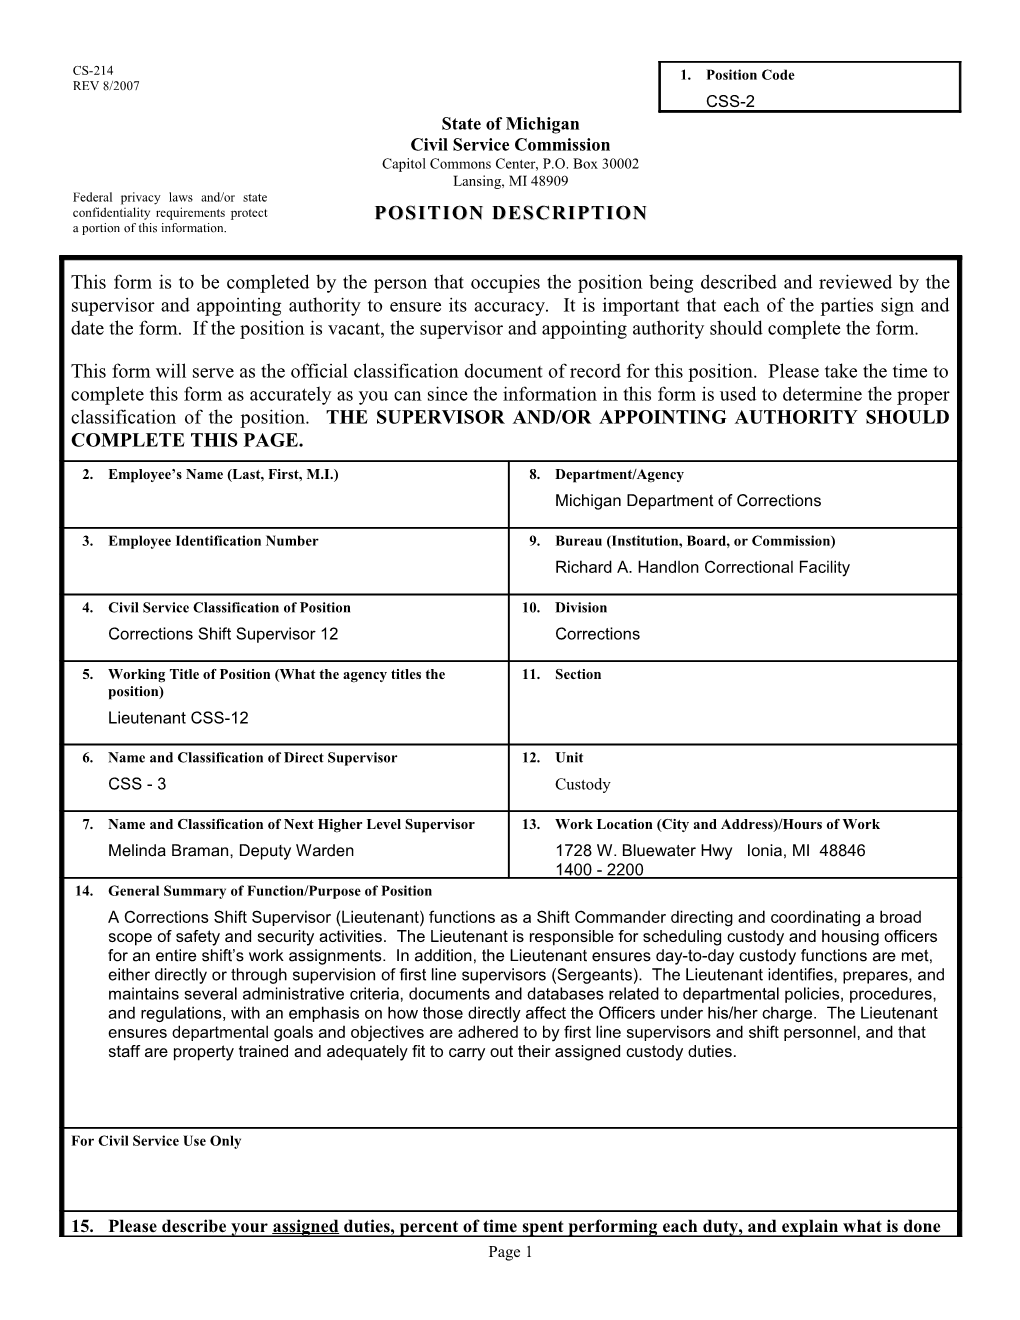 CS-214 Position Description Form s43